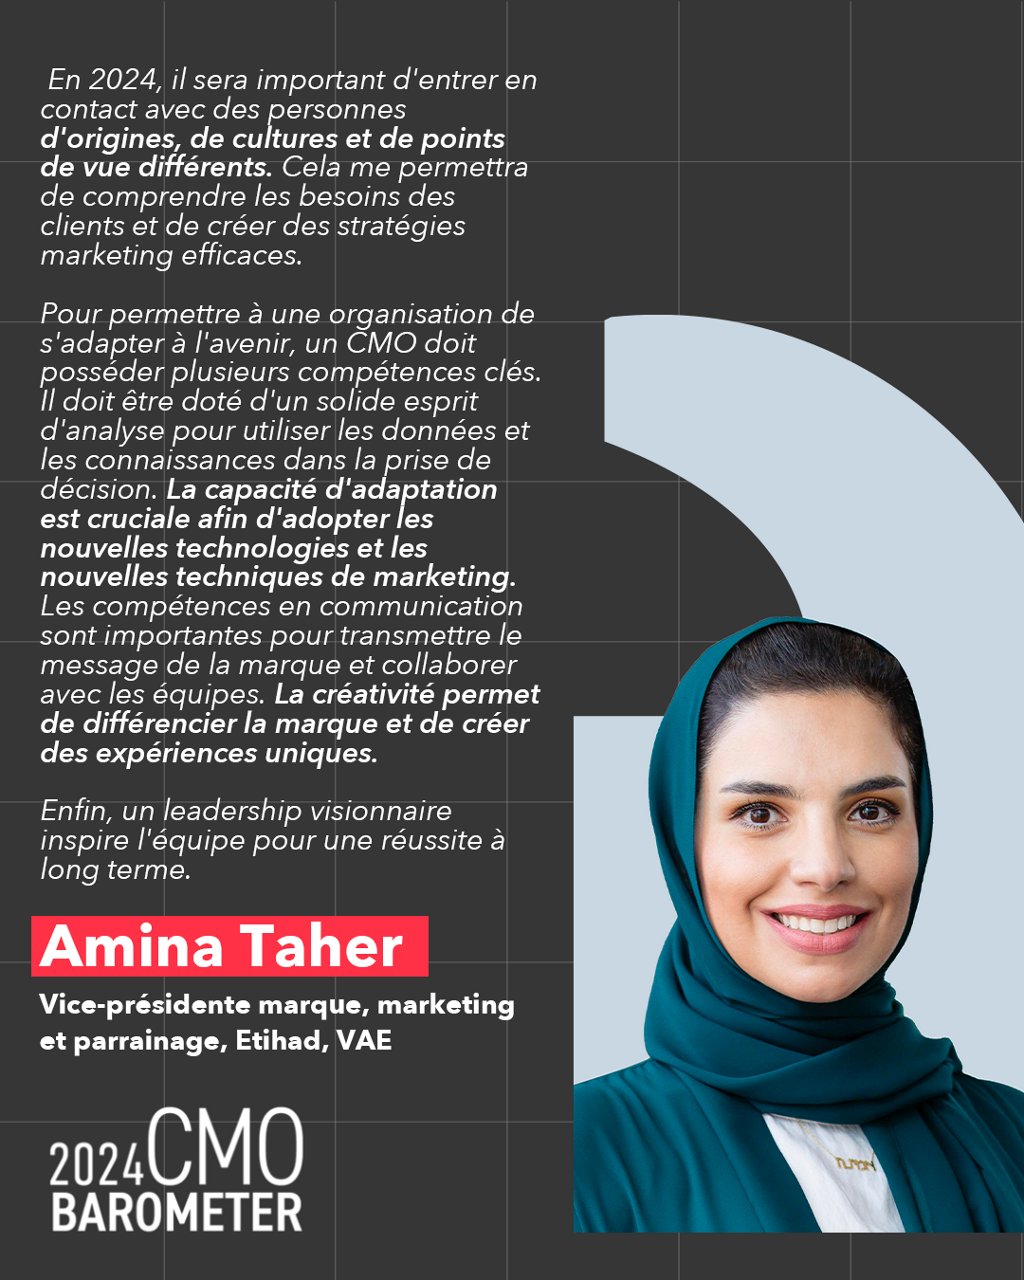 Amina Taher